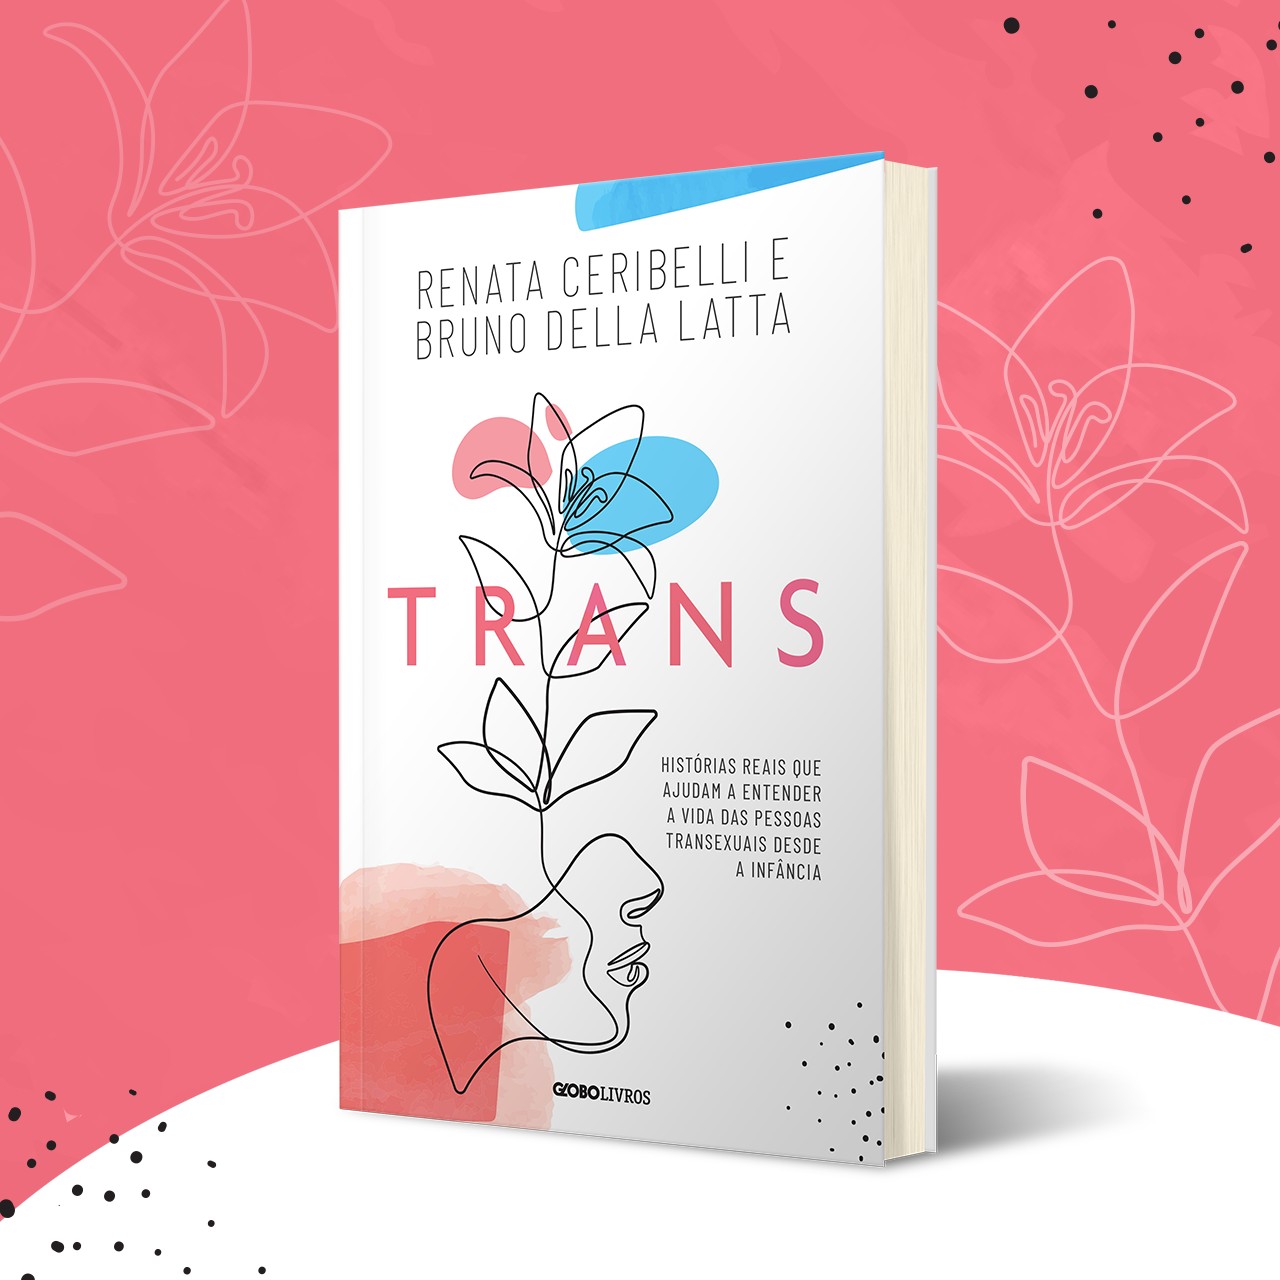 Trans: Histórias reais que ajudam a entender a vida das pessoas transexuais desde a infância (Foto: Divulgação)